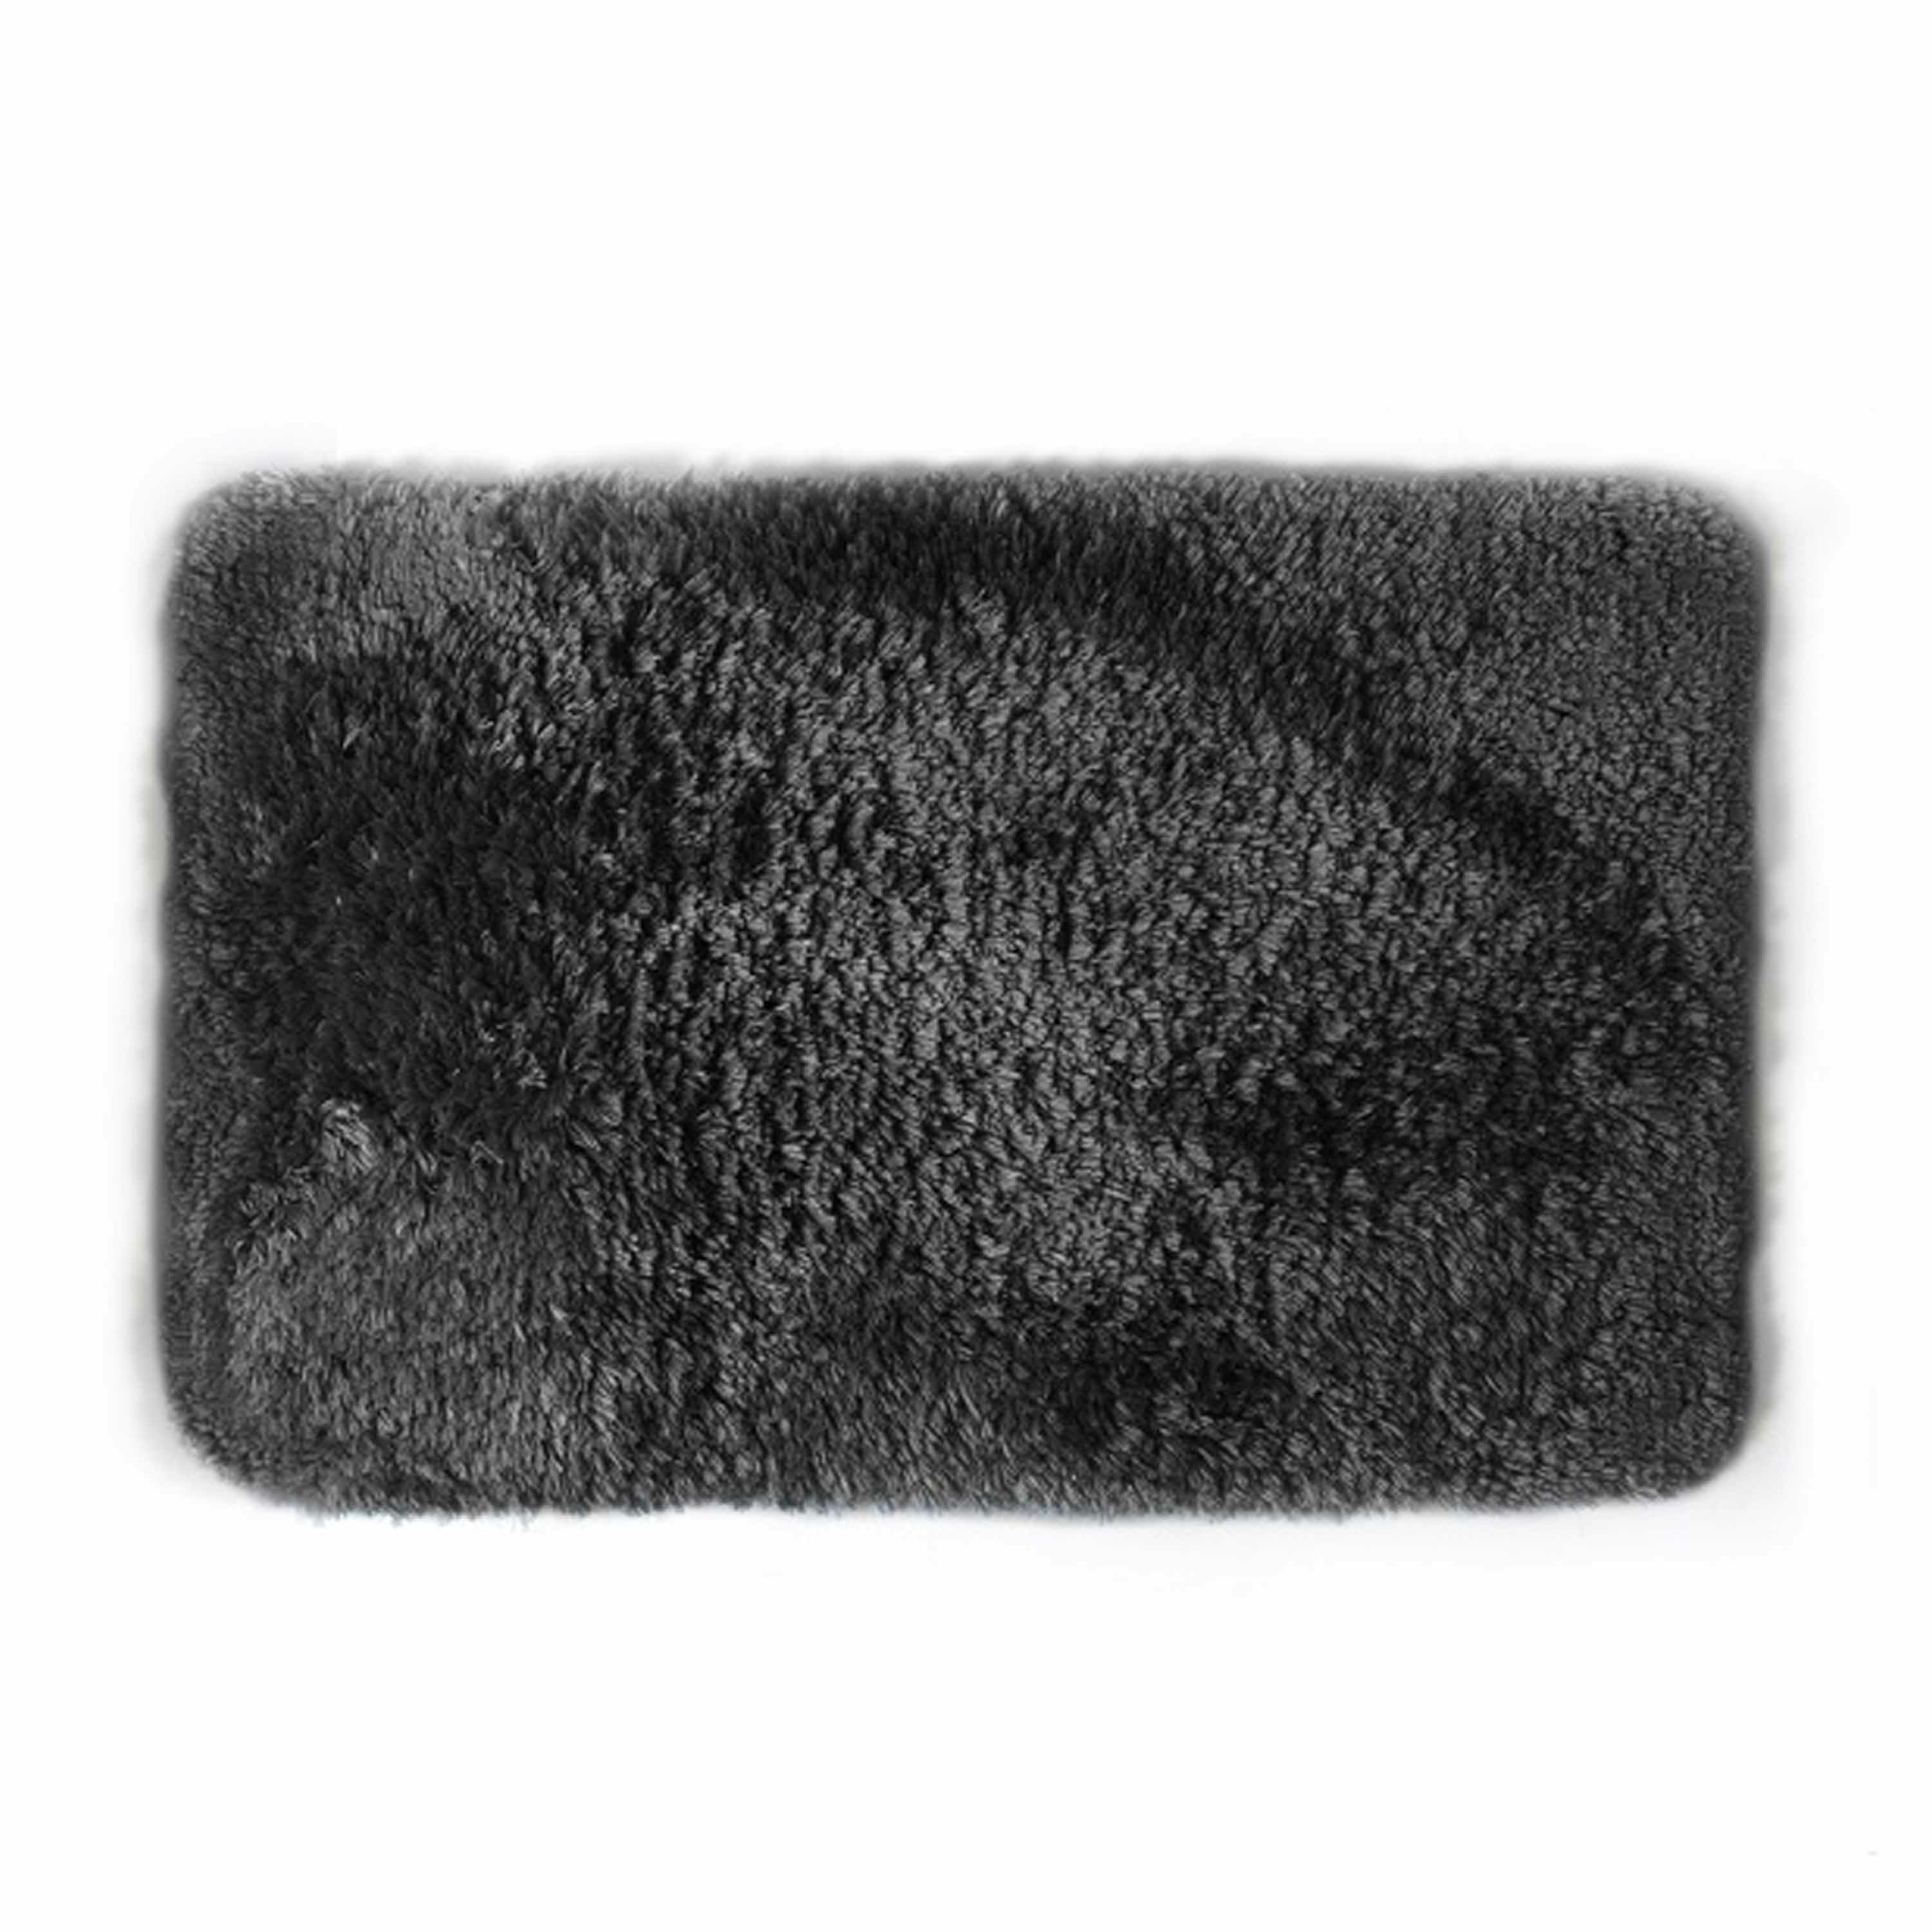 Spirella badkamer vloer kleedje-badmat tapijt hoogpolig en luxe uitvoering zwart 40 x 60 cm Microfib